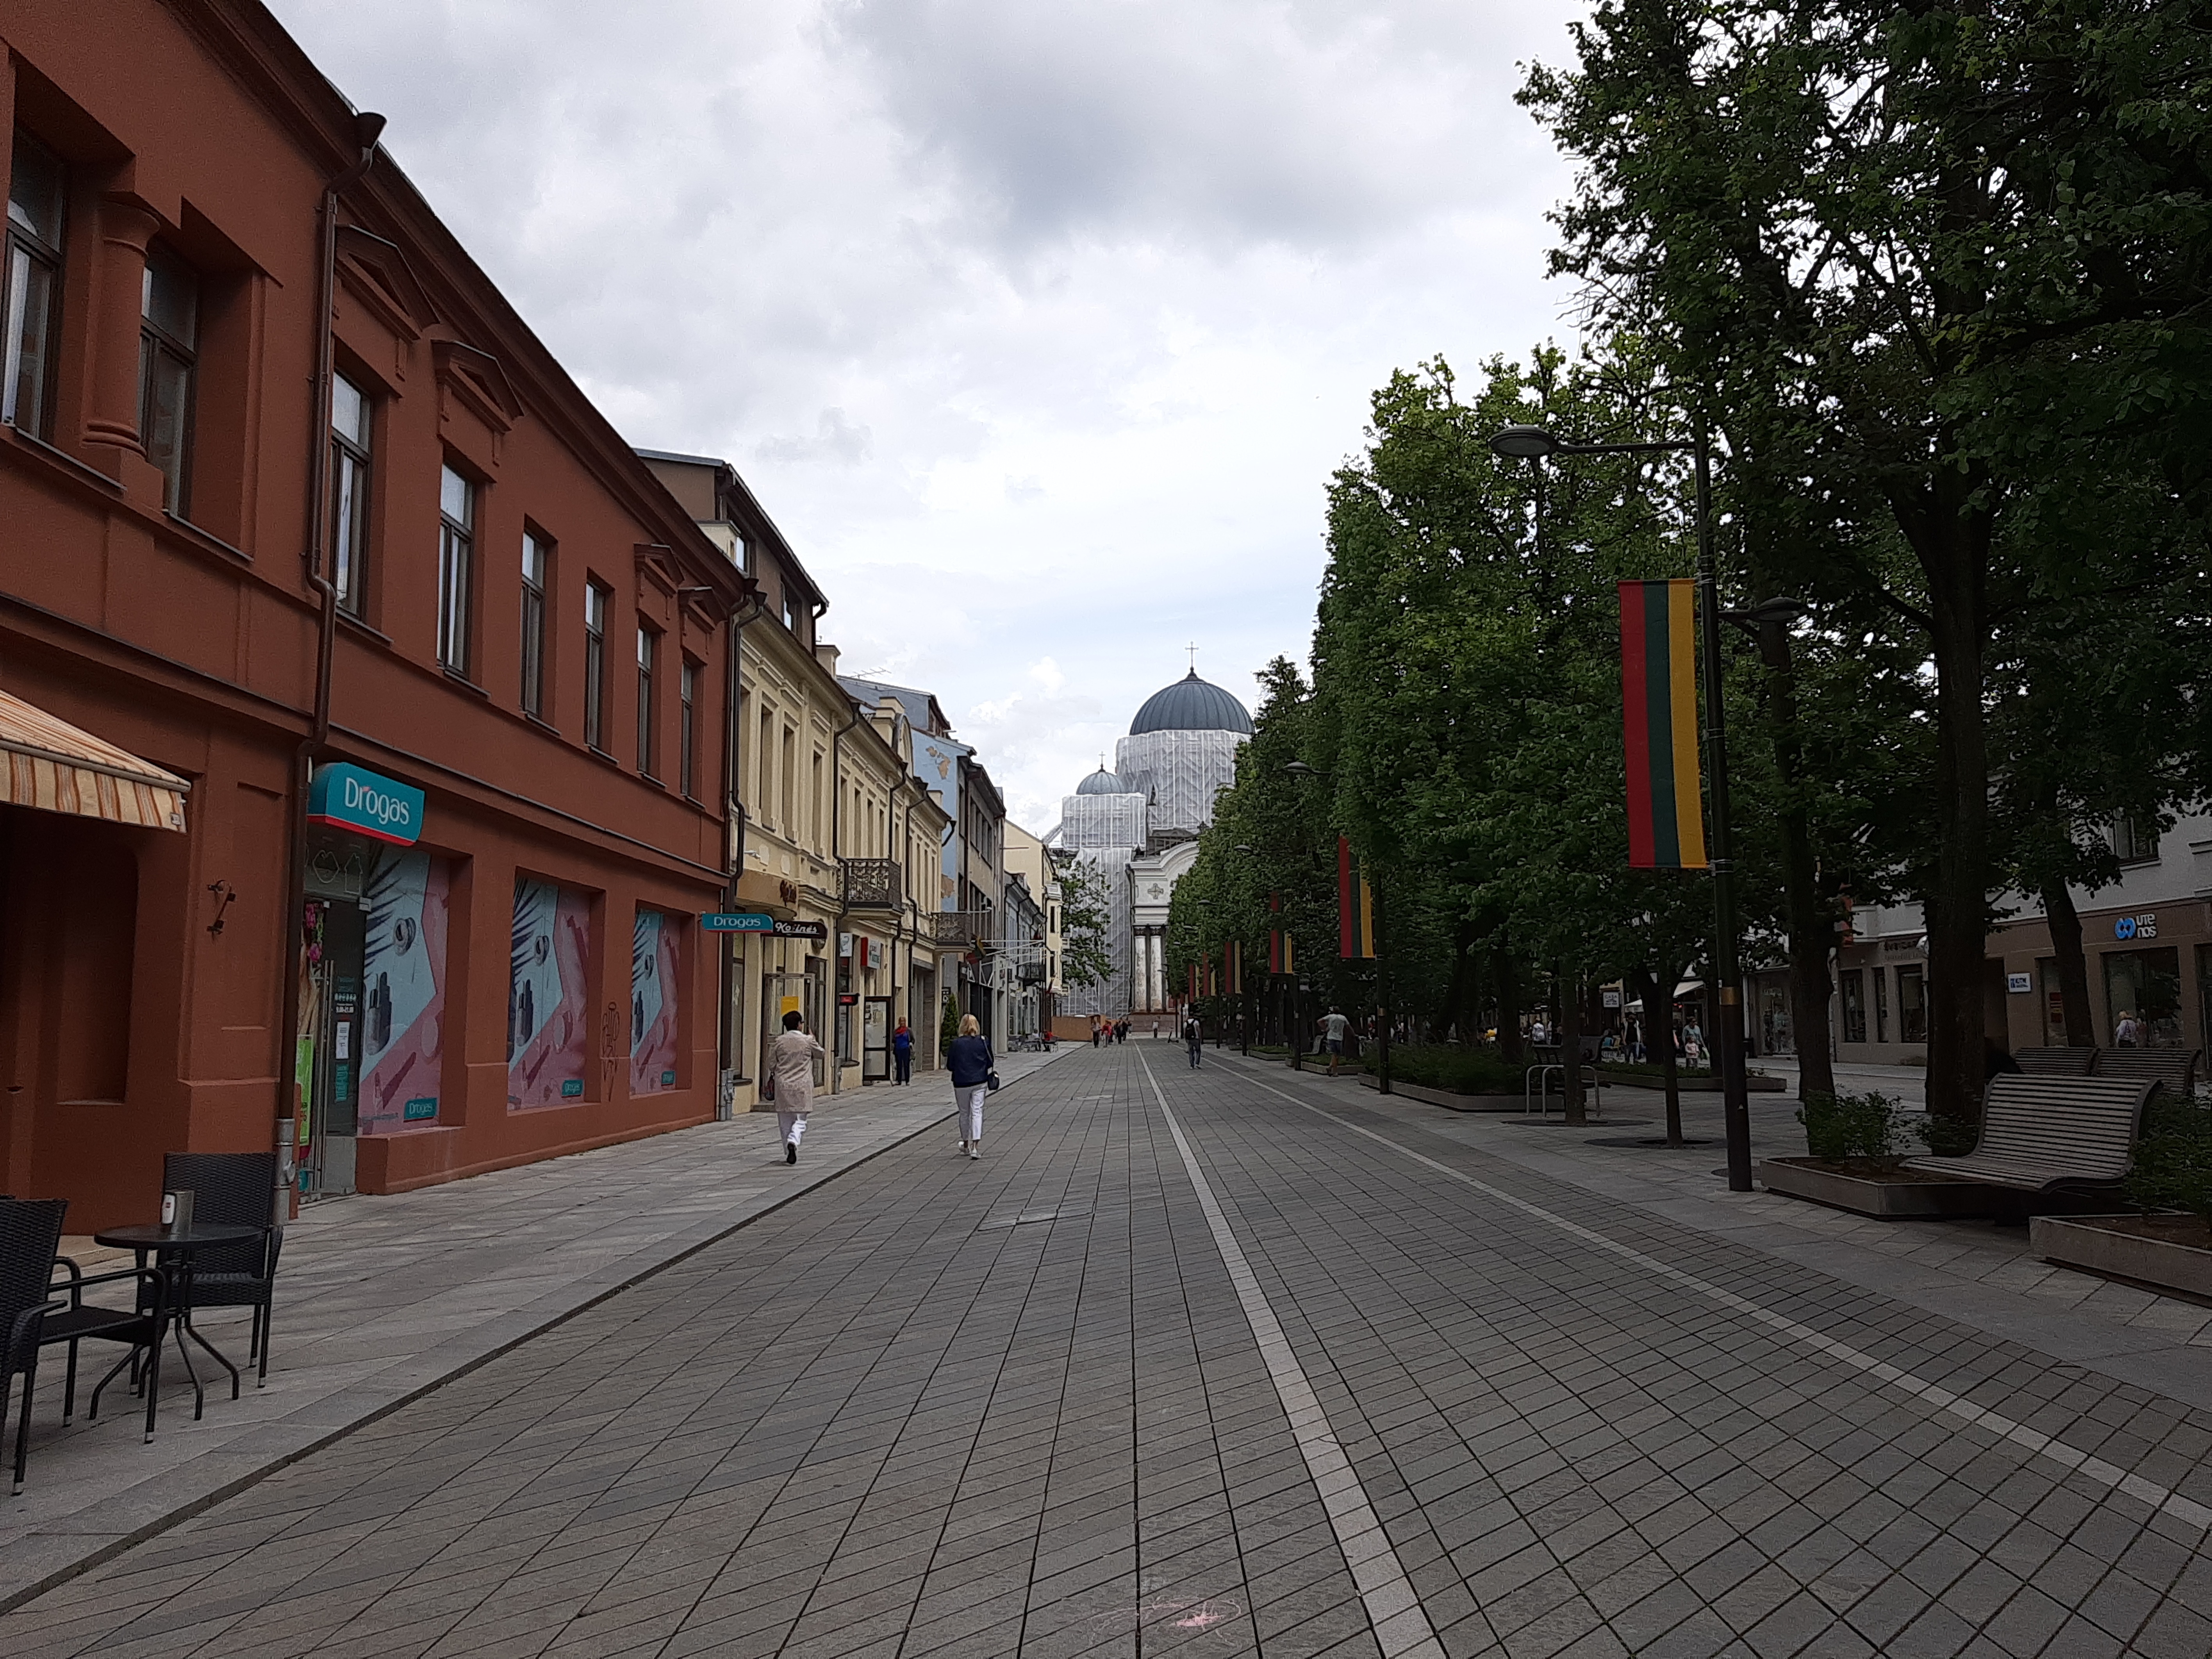 Card “Kaizeris Vilhelm Street in Kaunas” rephoto